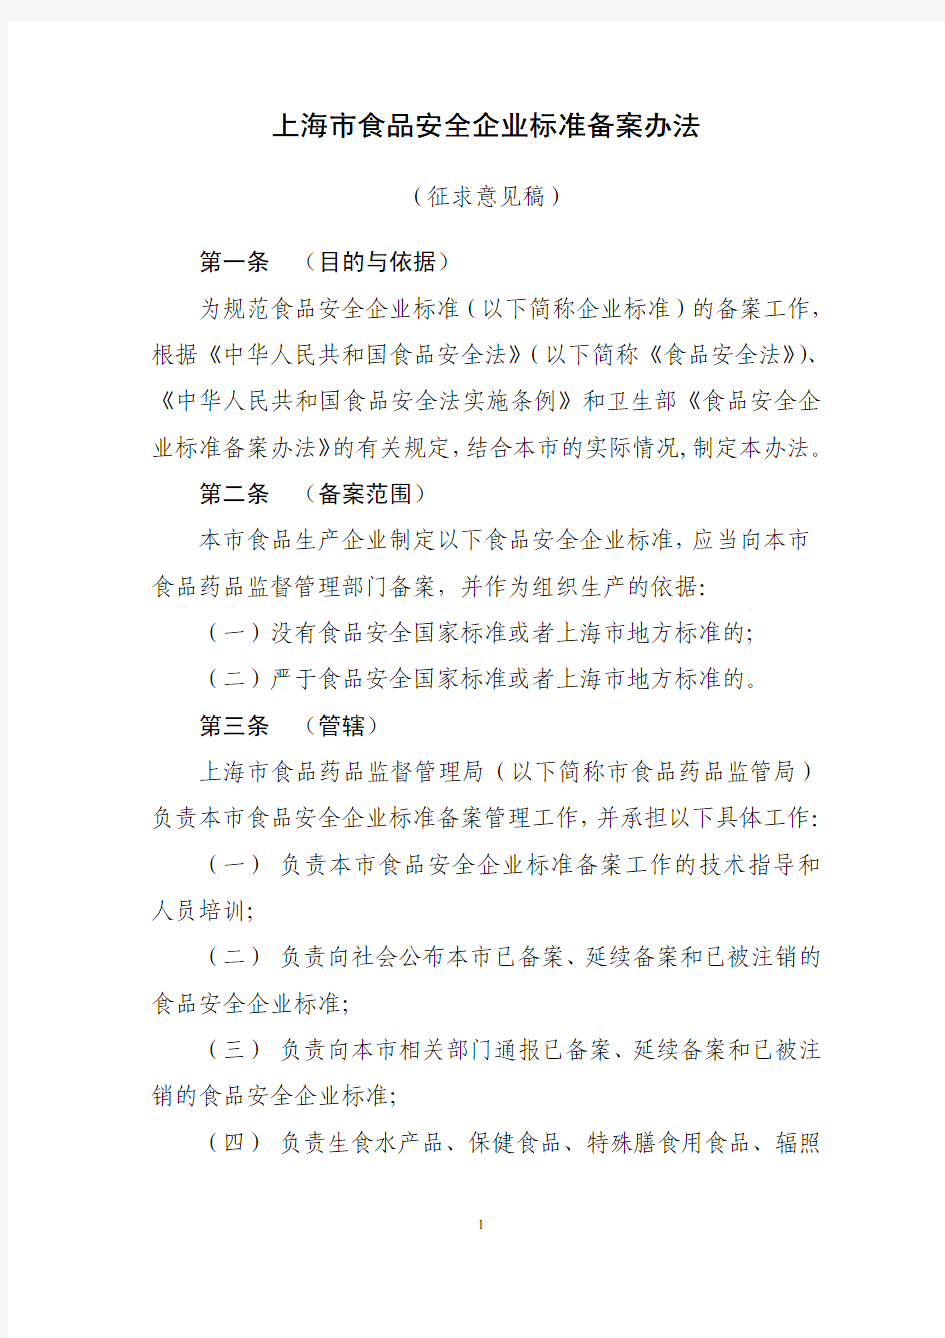 上海市食品安全企业标准管理办法